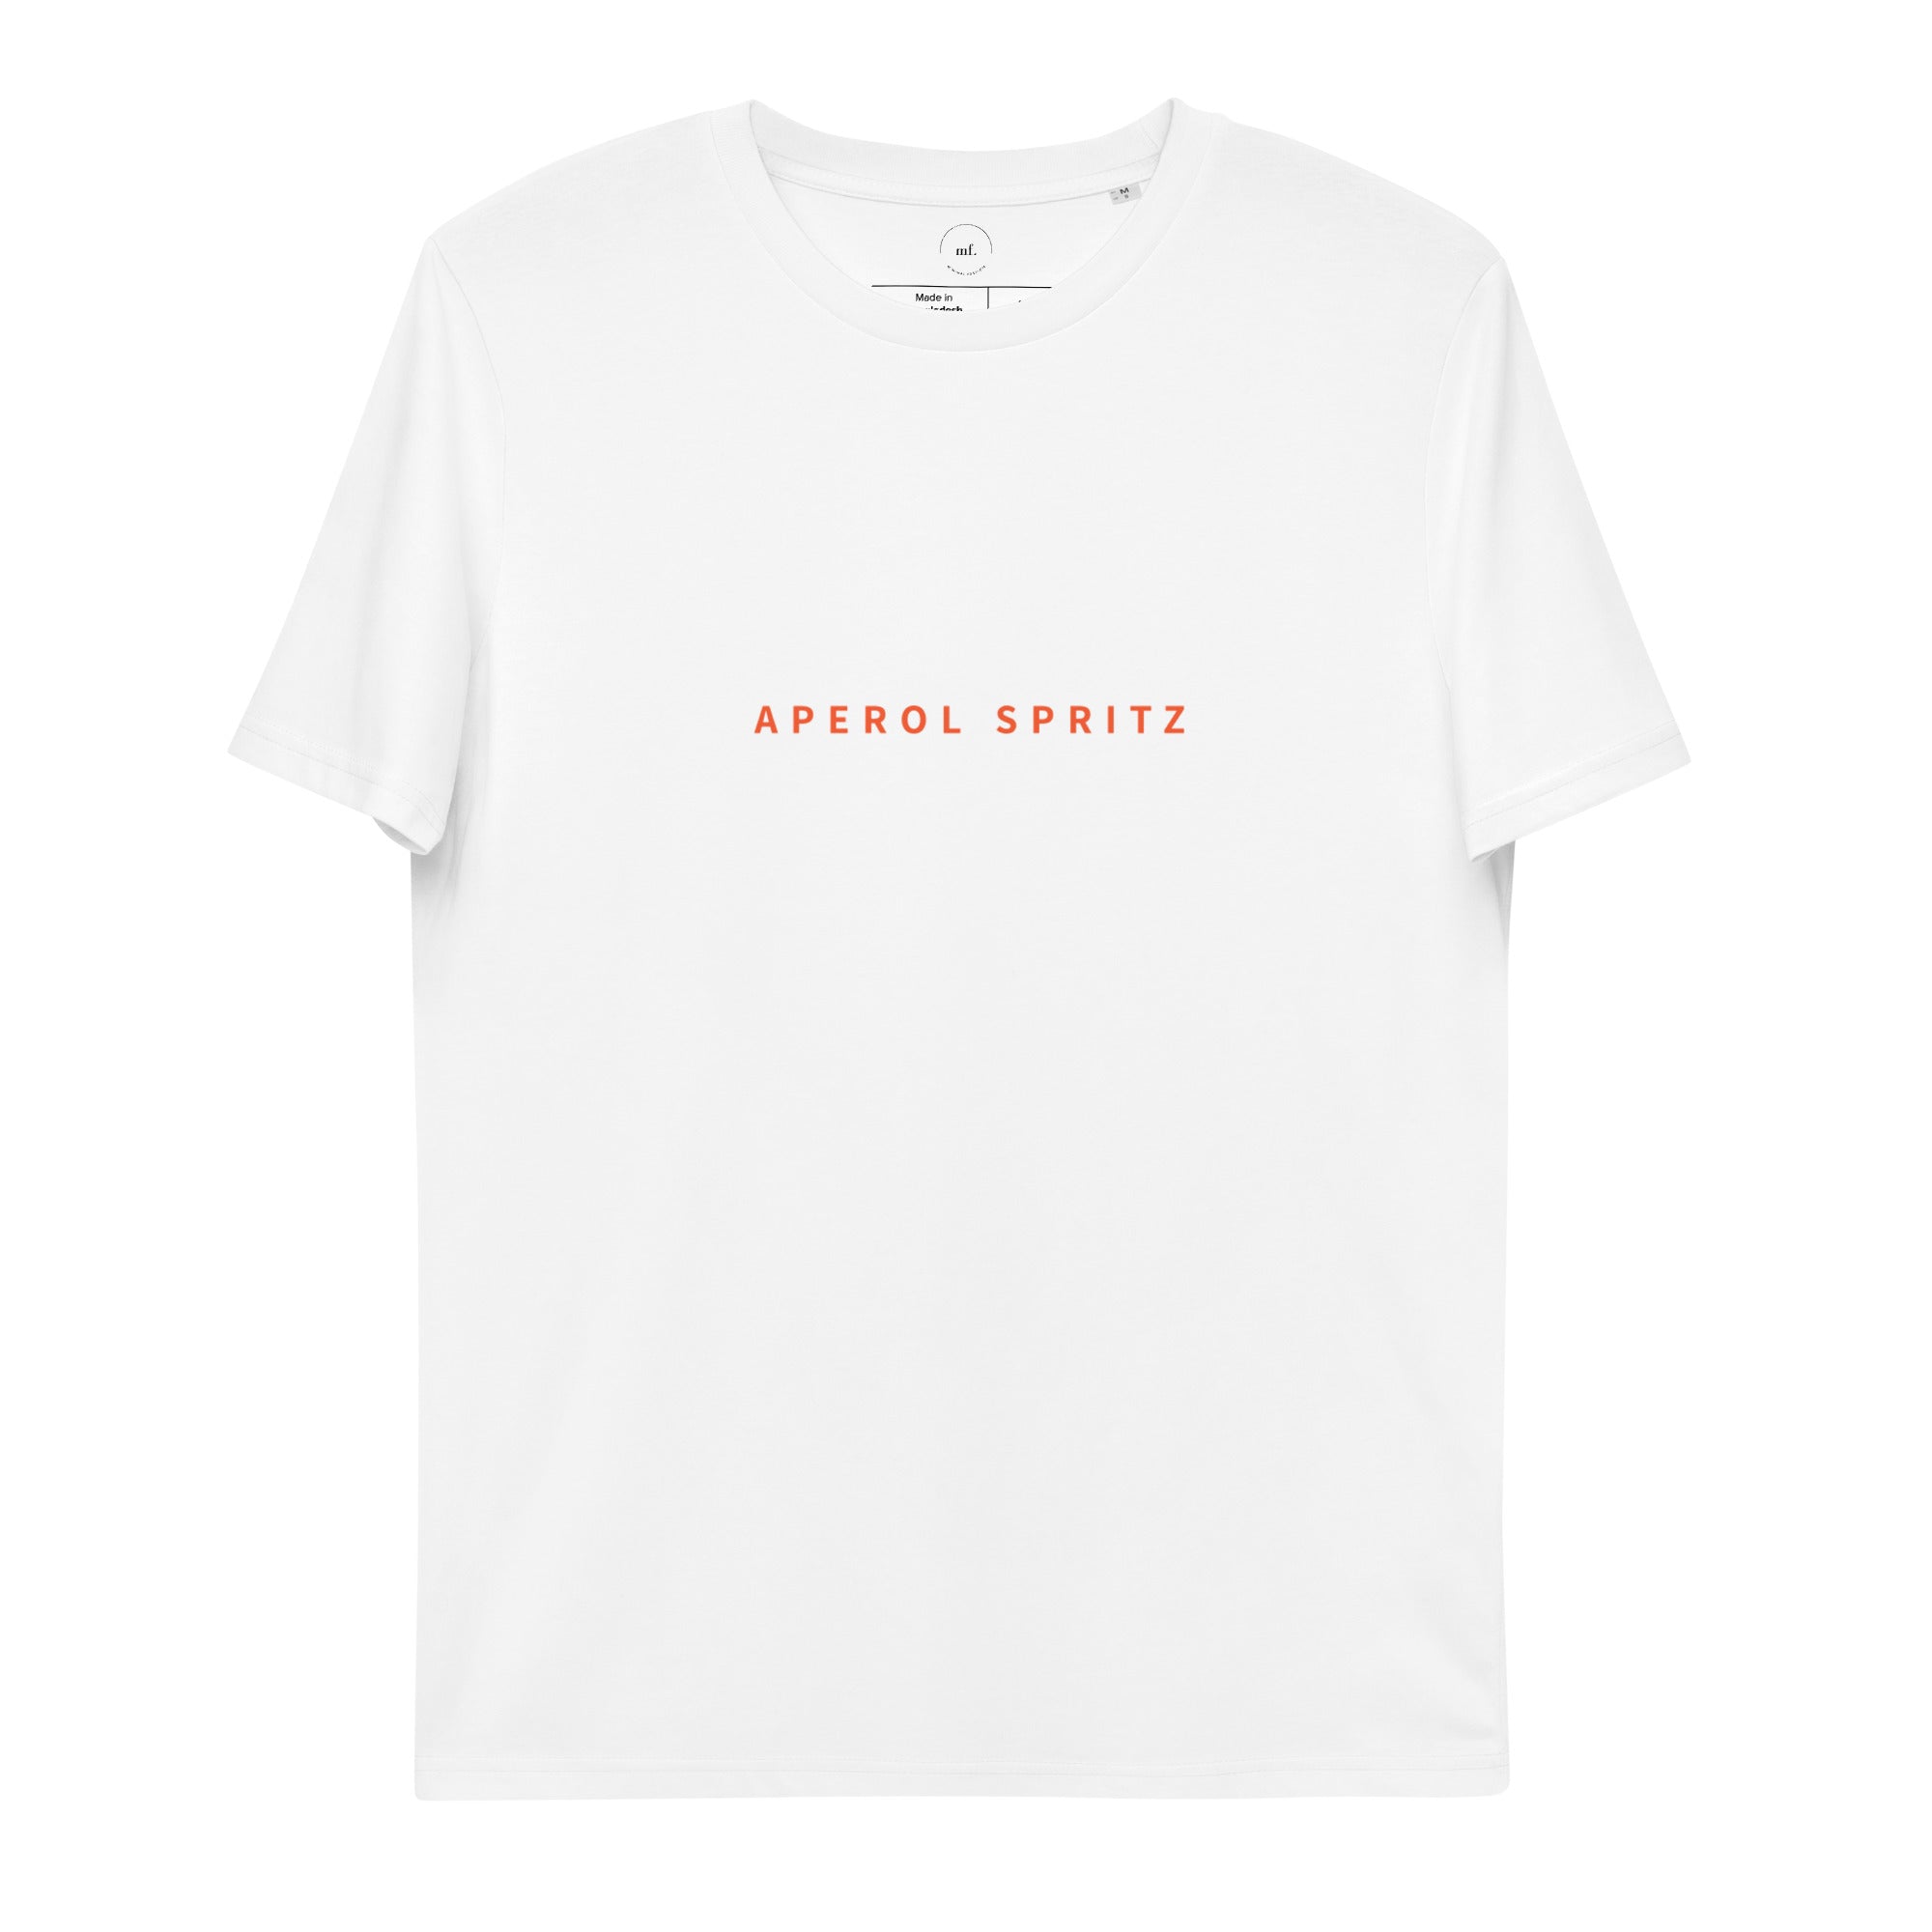 APEROL SRITZ Beach Shirt